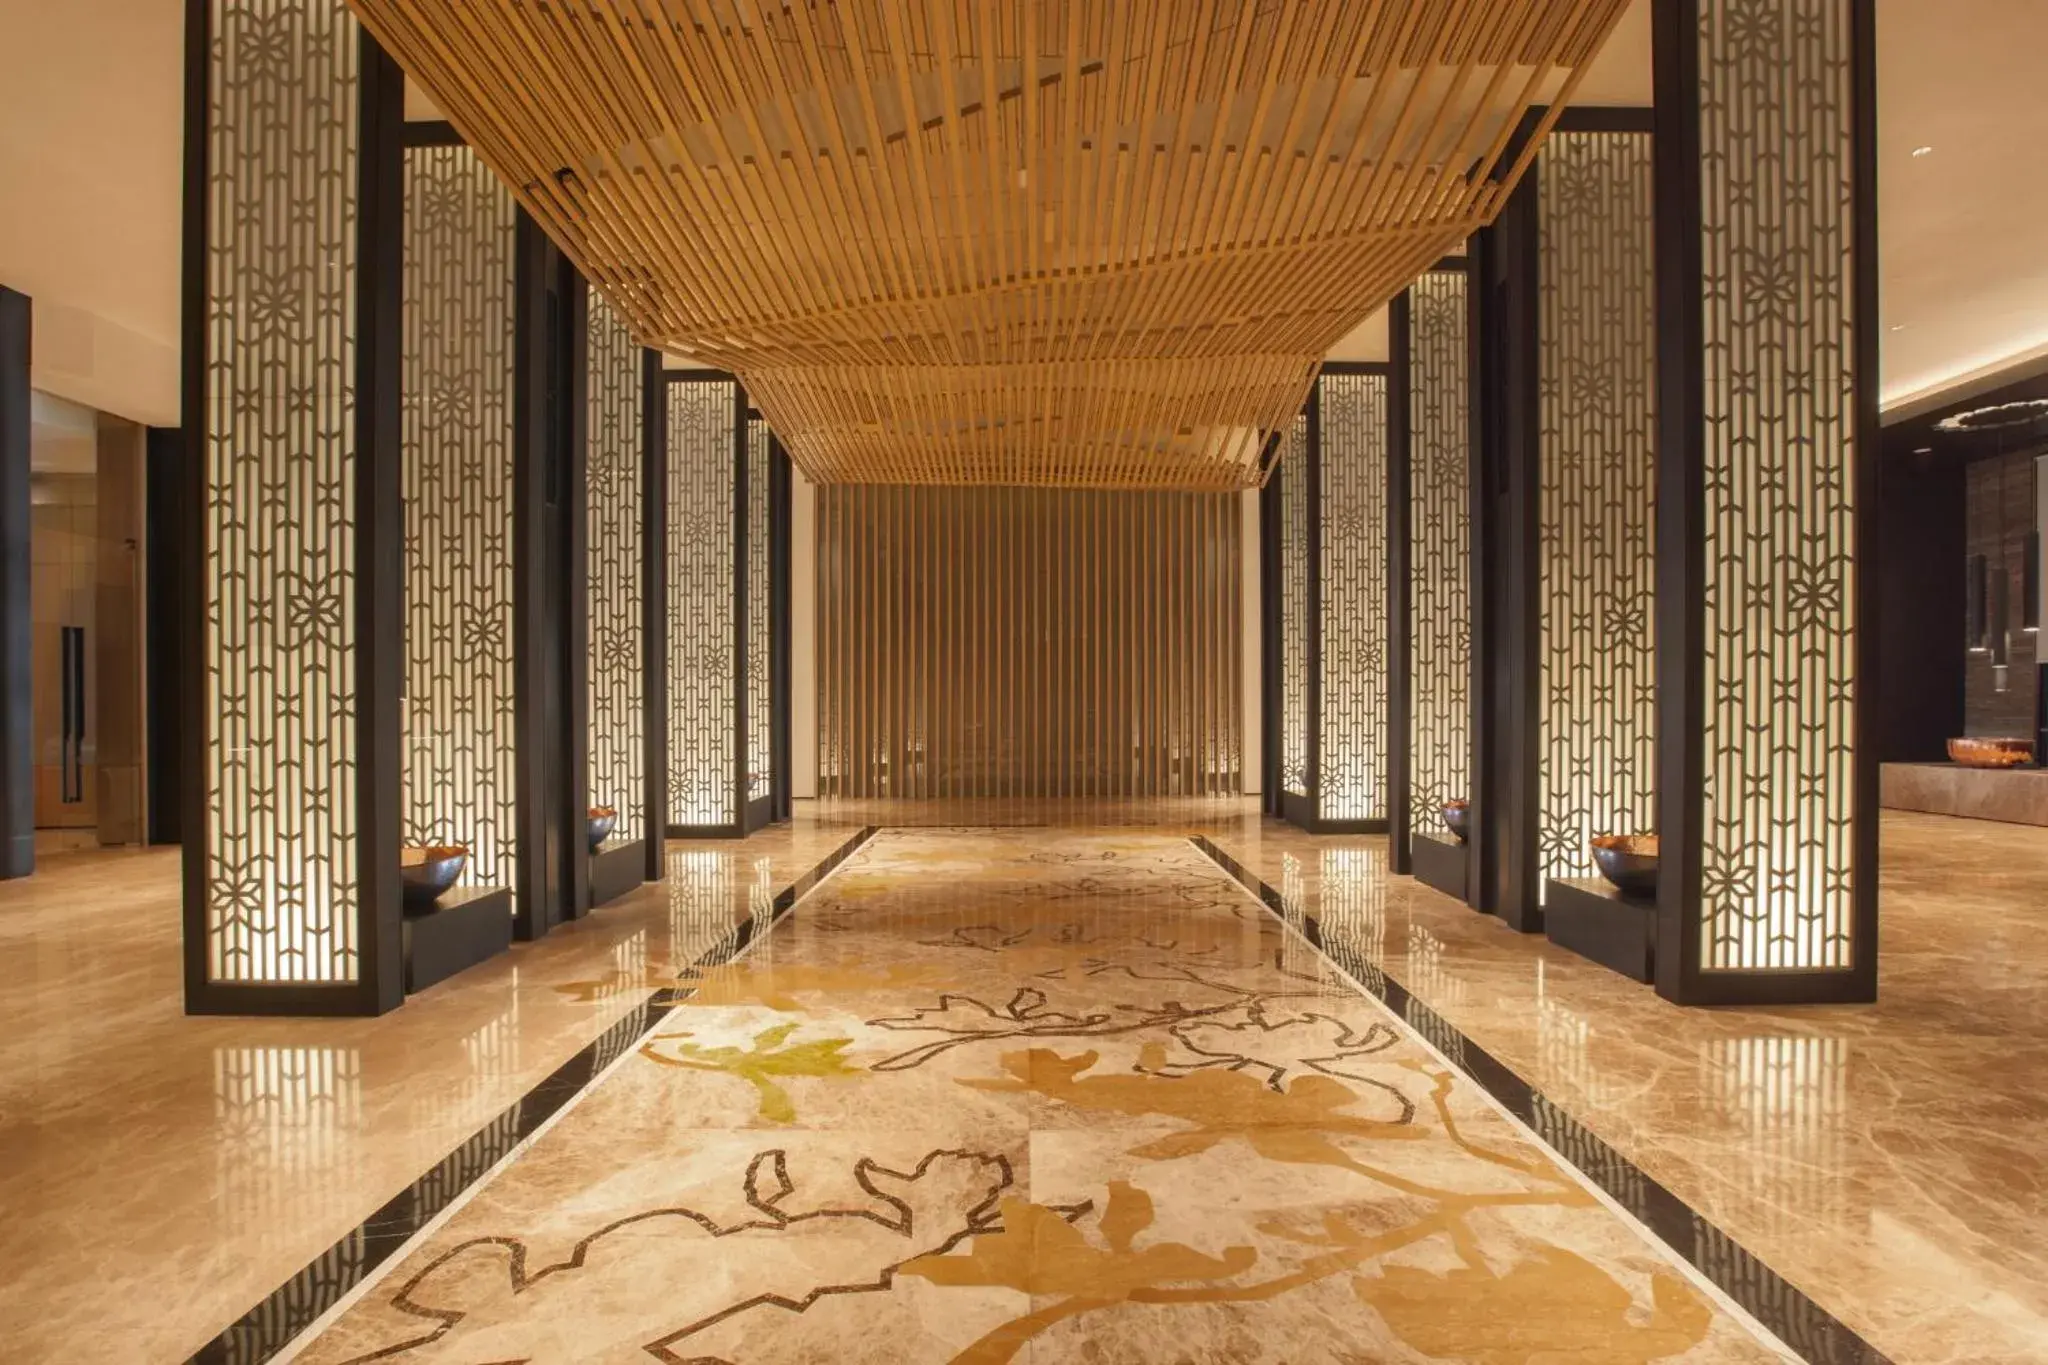 Lobby or reception in Hotel Santika Premiere Bandara Palembang